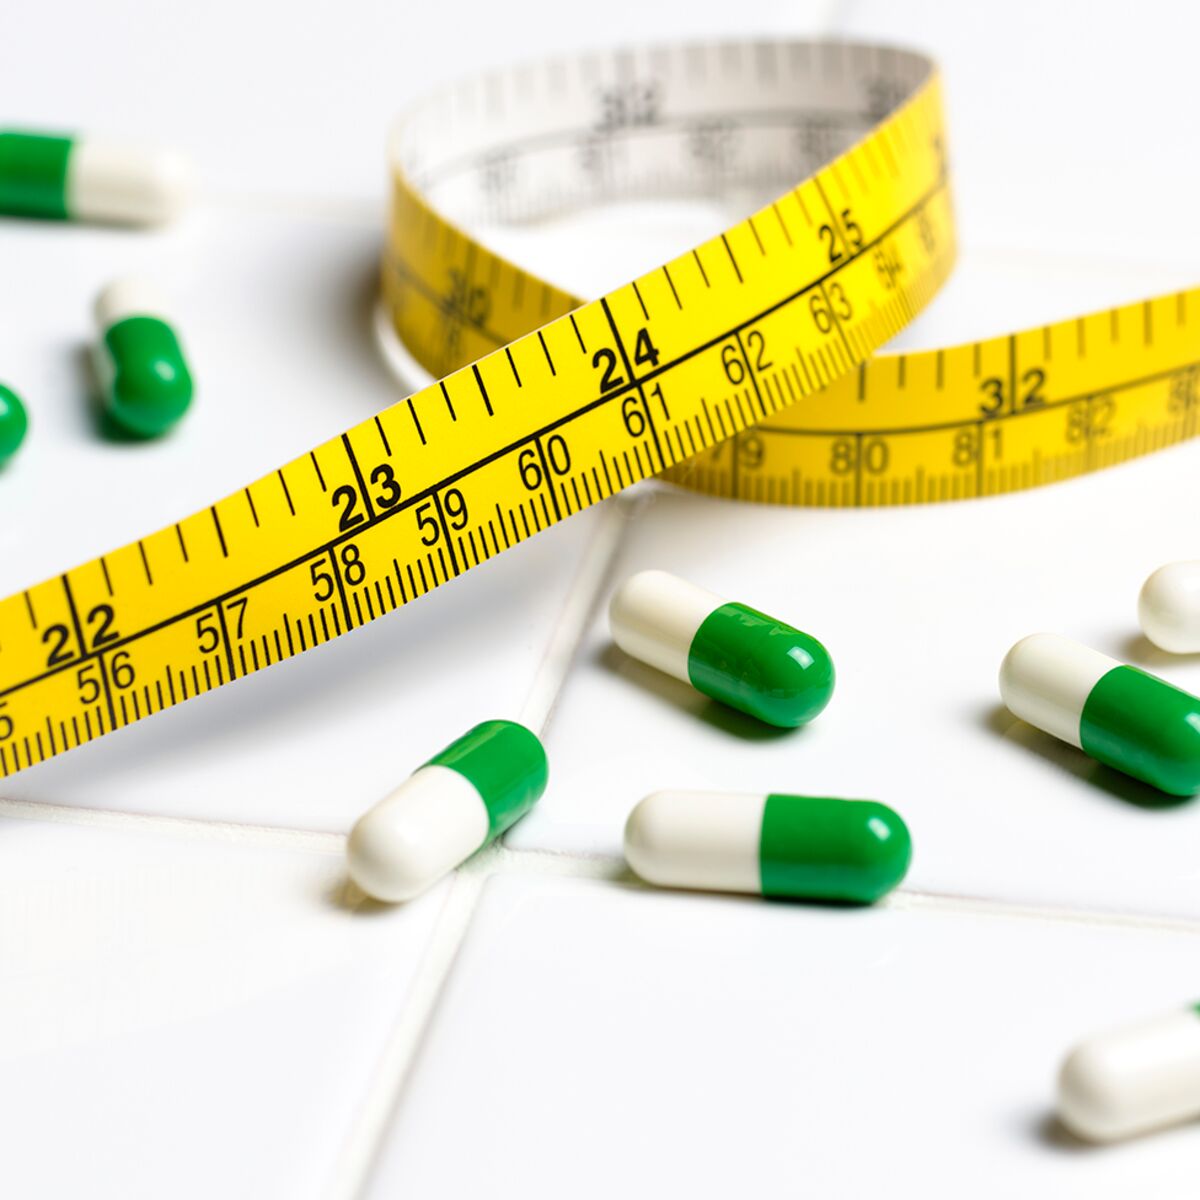 Les médicaments pour maigrir vite : nos conseils - Le blog